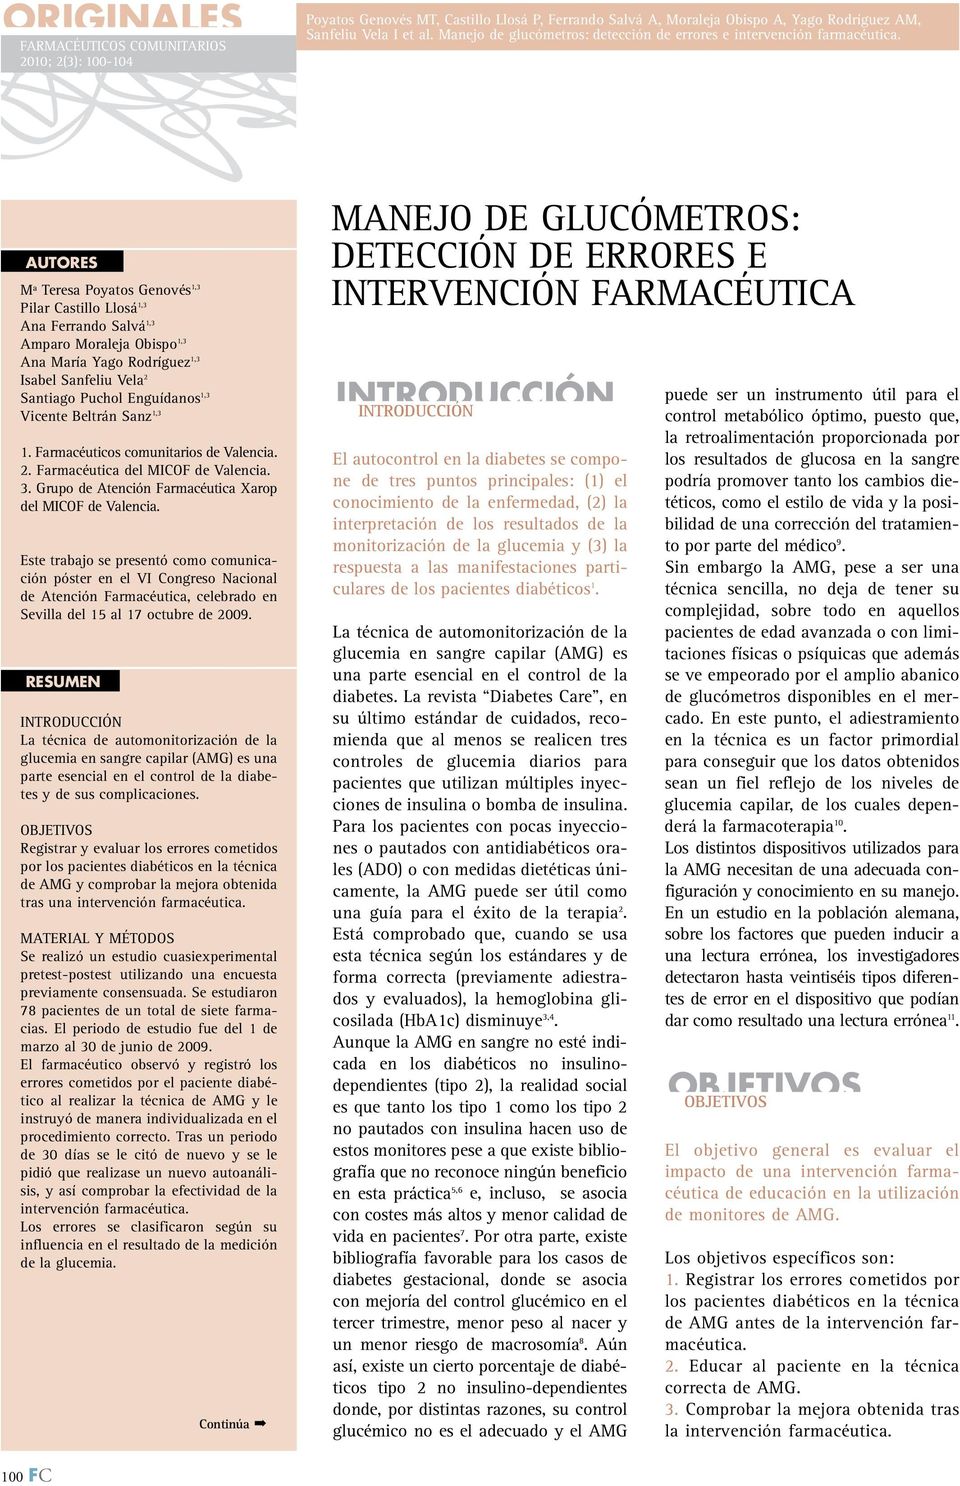 Este trabajo se presentó como comunicación póster en el VI Congreso Nacional de Atención Farmacéutica, celebrado en Sevilla del 15 al 17 octubre de 2009.